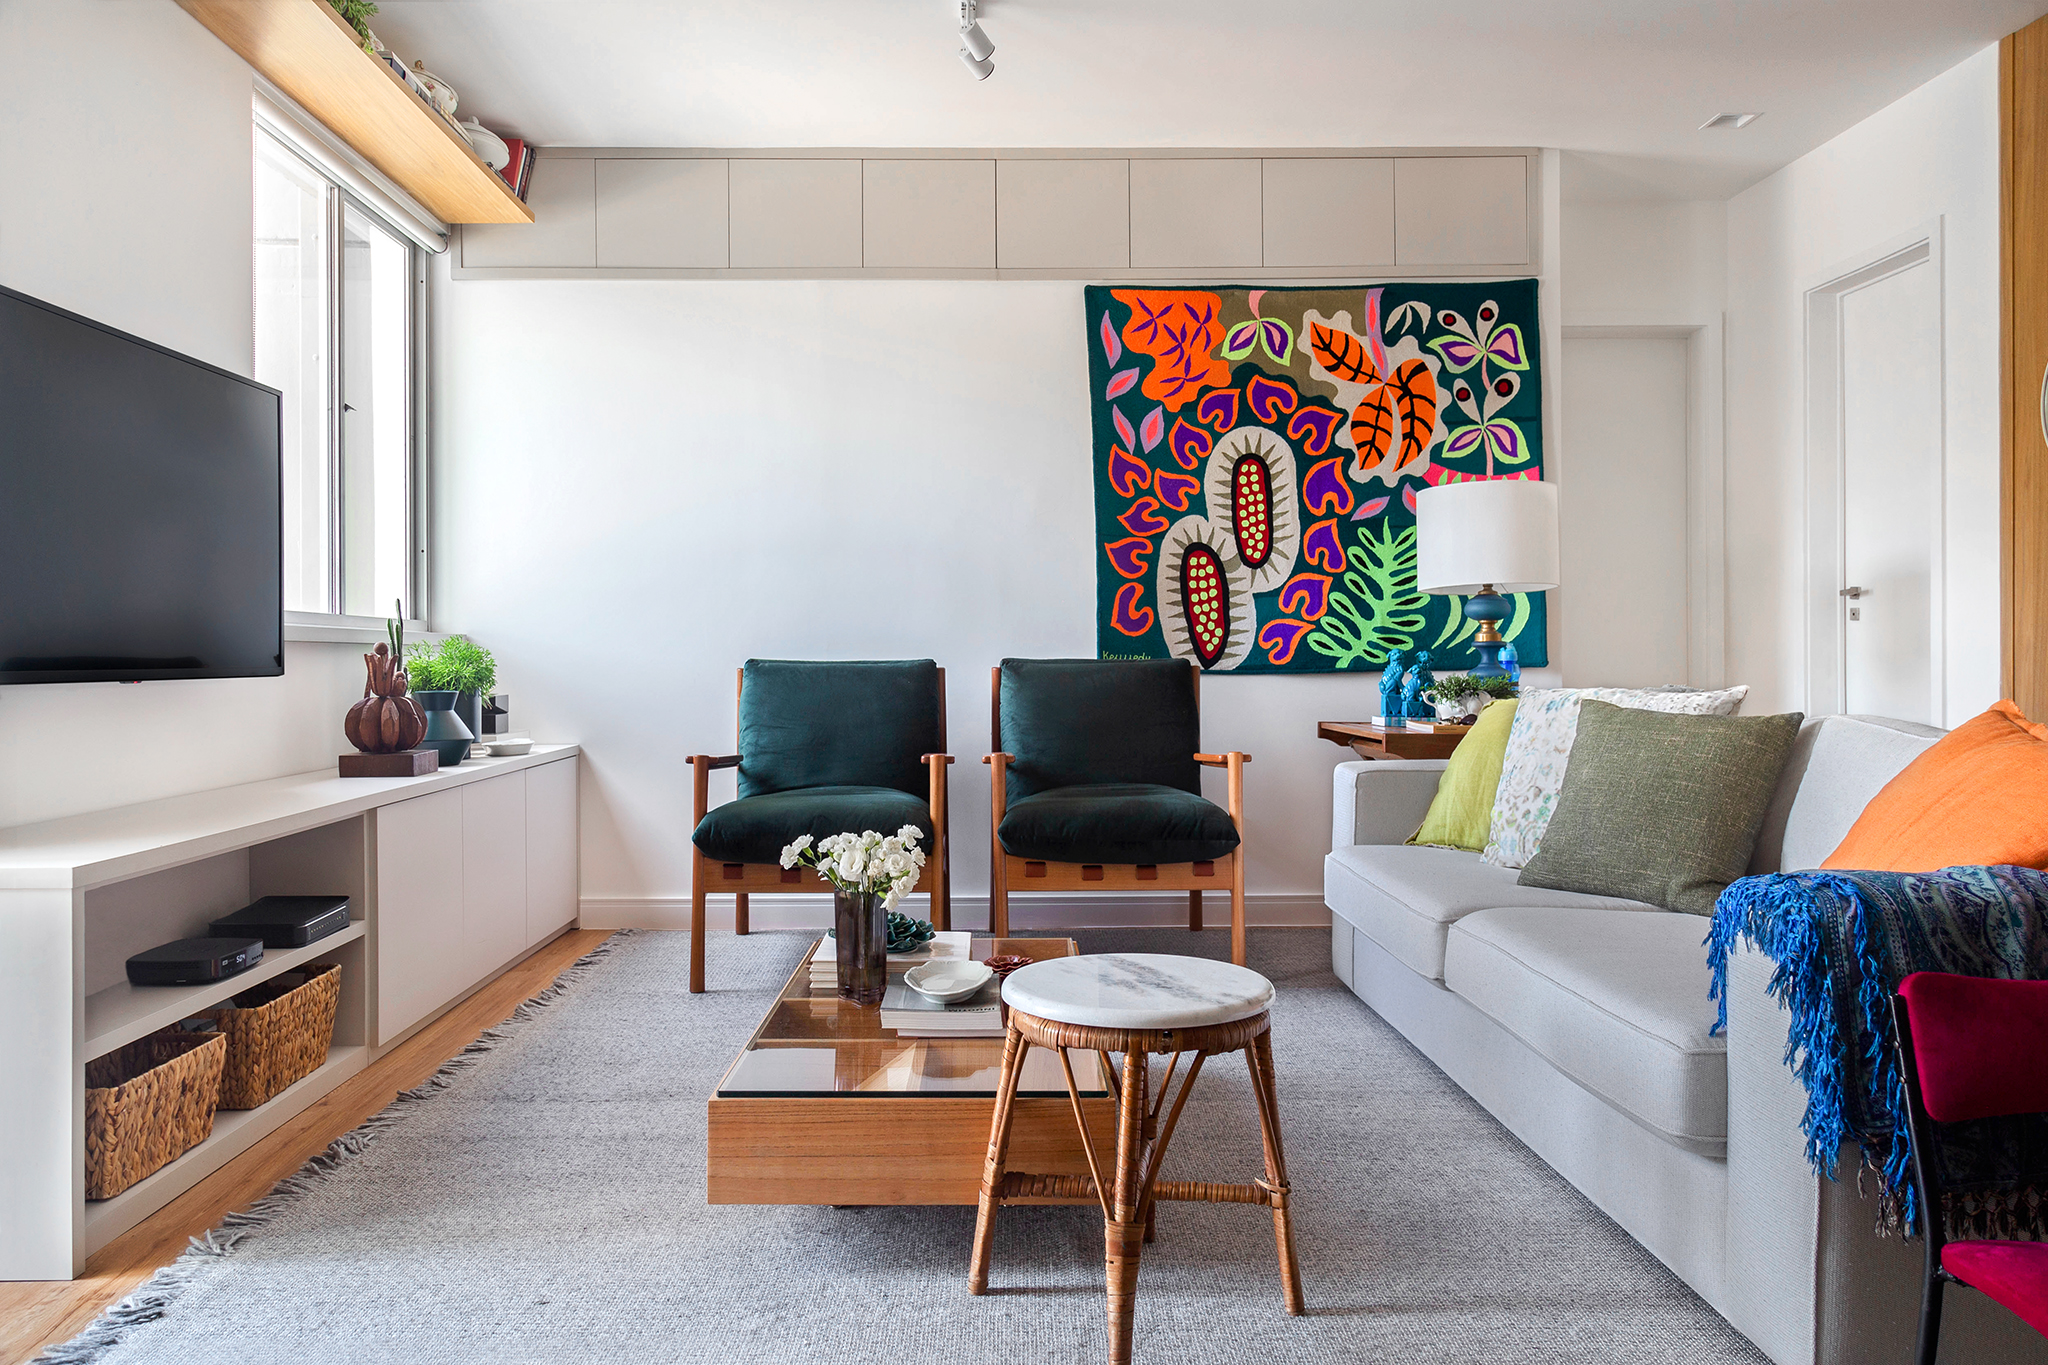 Sala de estar com sofá de cor neutra, duas cadeiras e tapeçaria de parede ao fundo